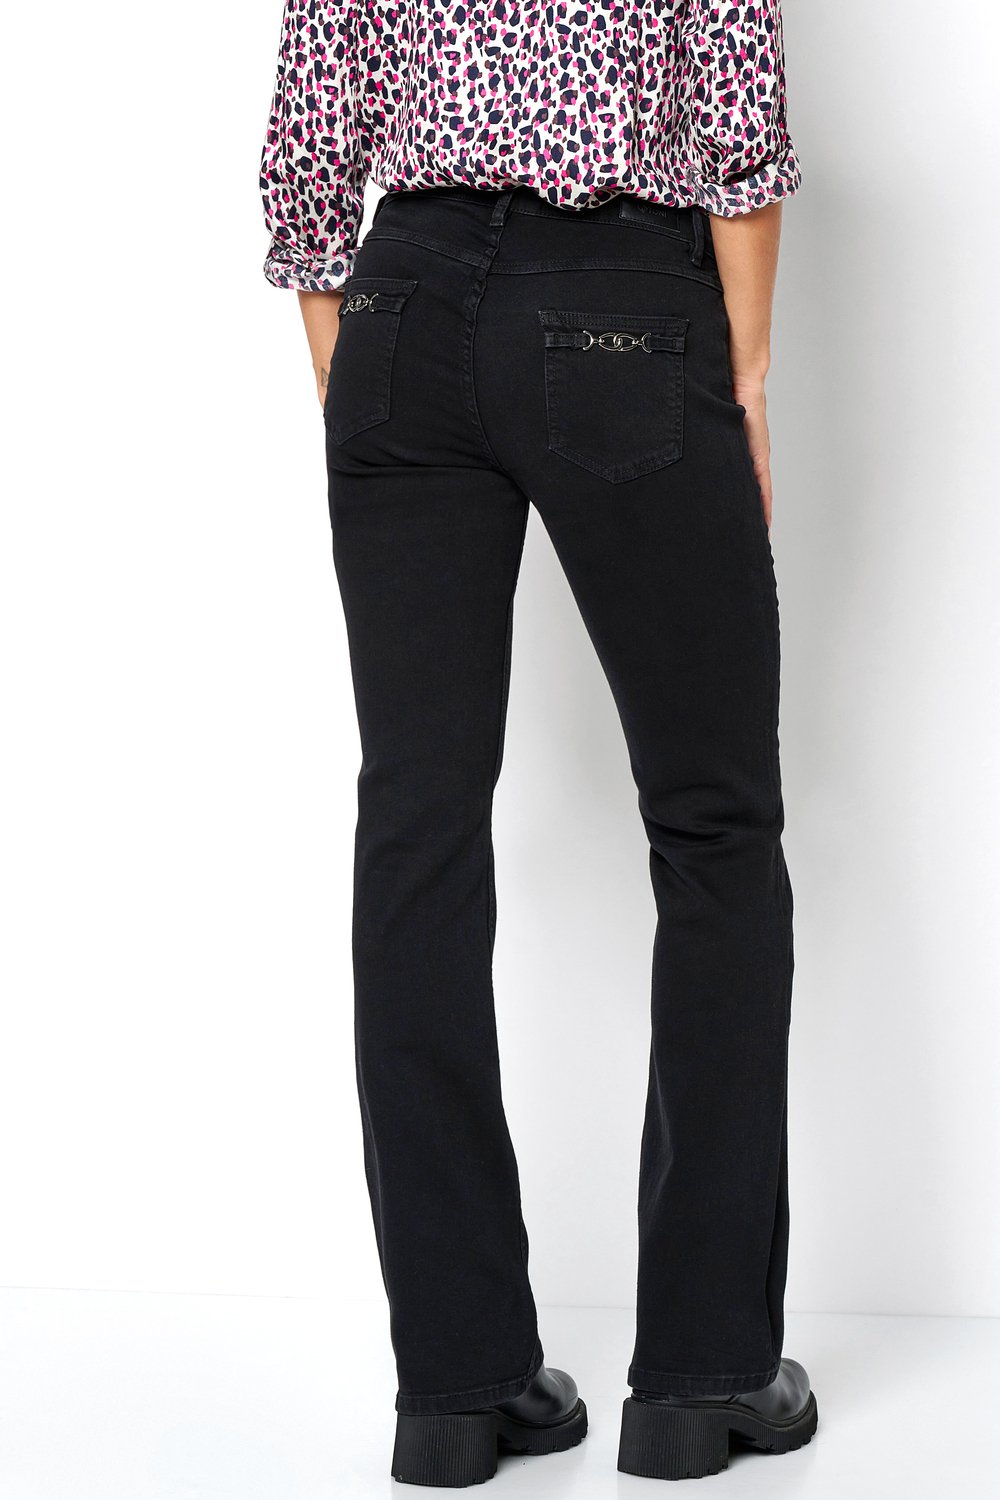 Damen-Jeans "Perfect Shape Bootcut" mit ausgestelltem Bein